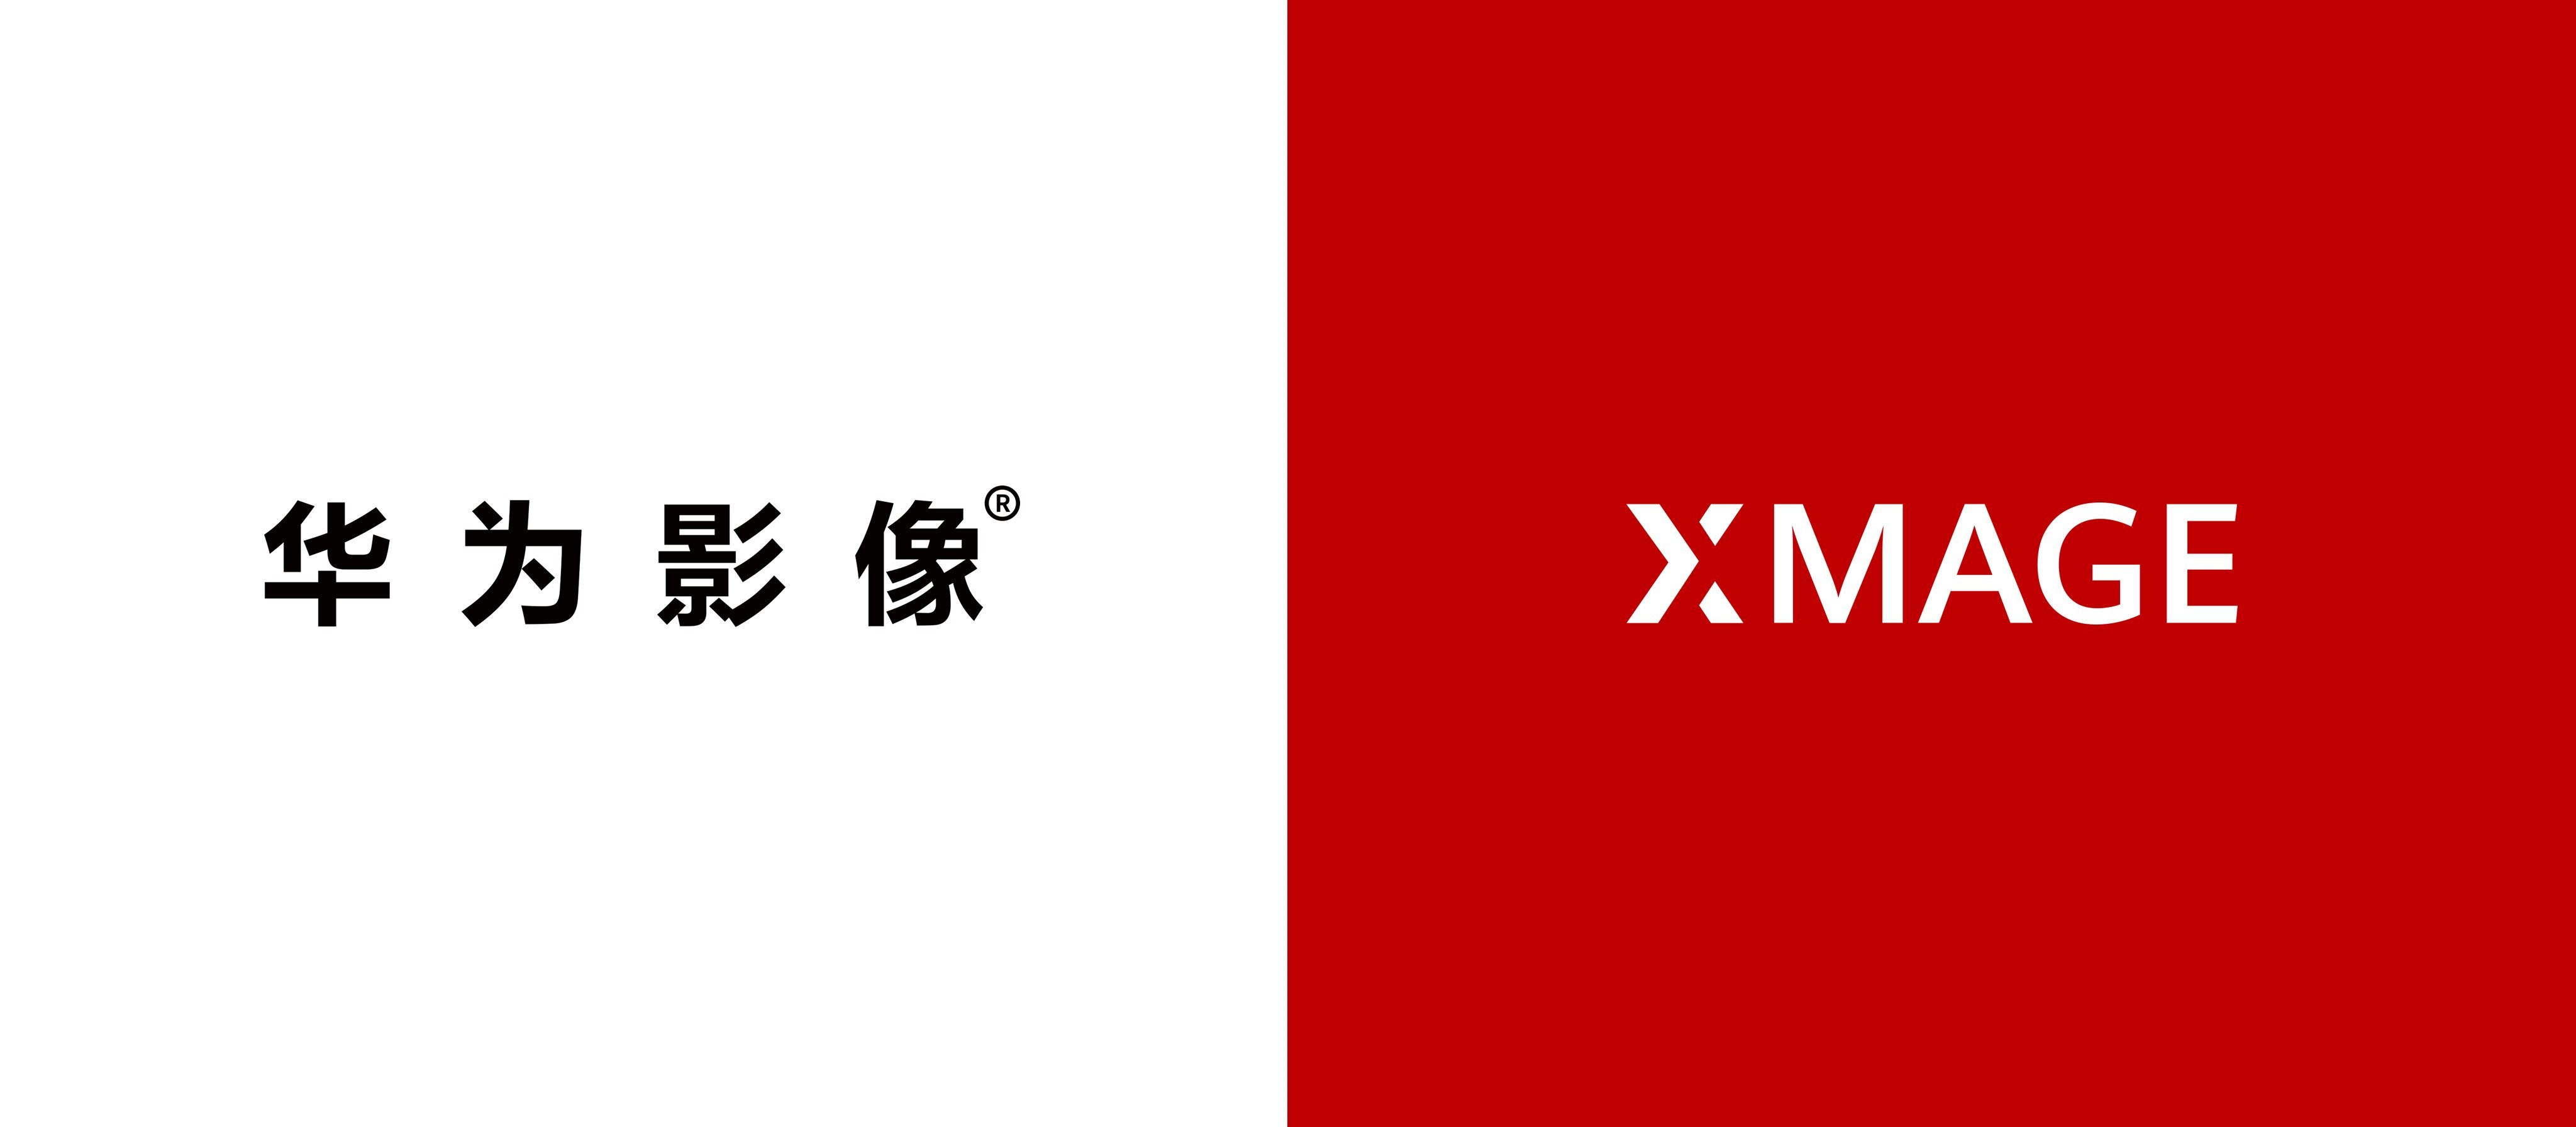 华为发布全新品牌华为影像XMAGE，突破移动影像新高度